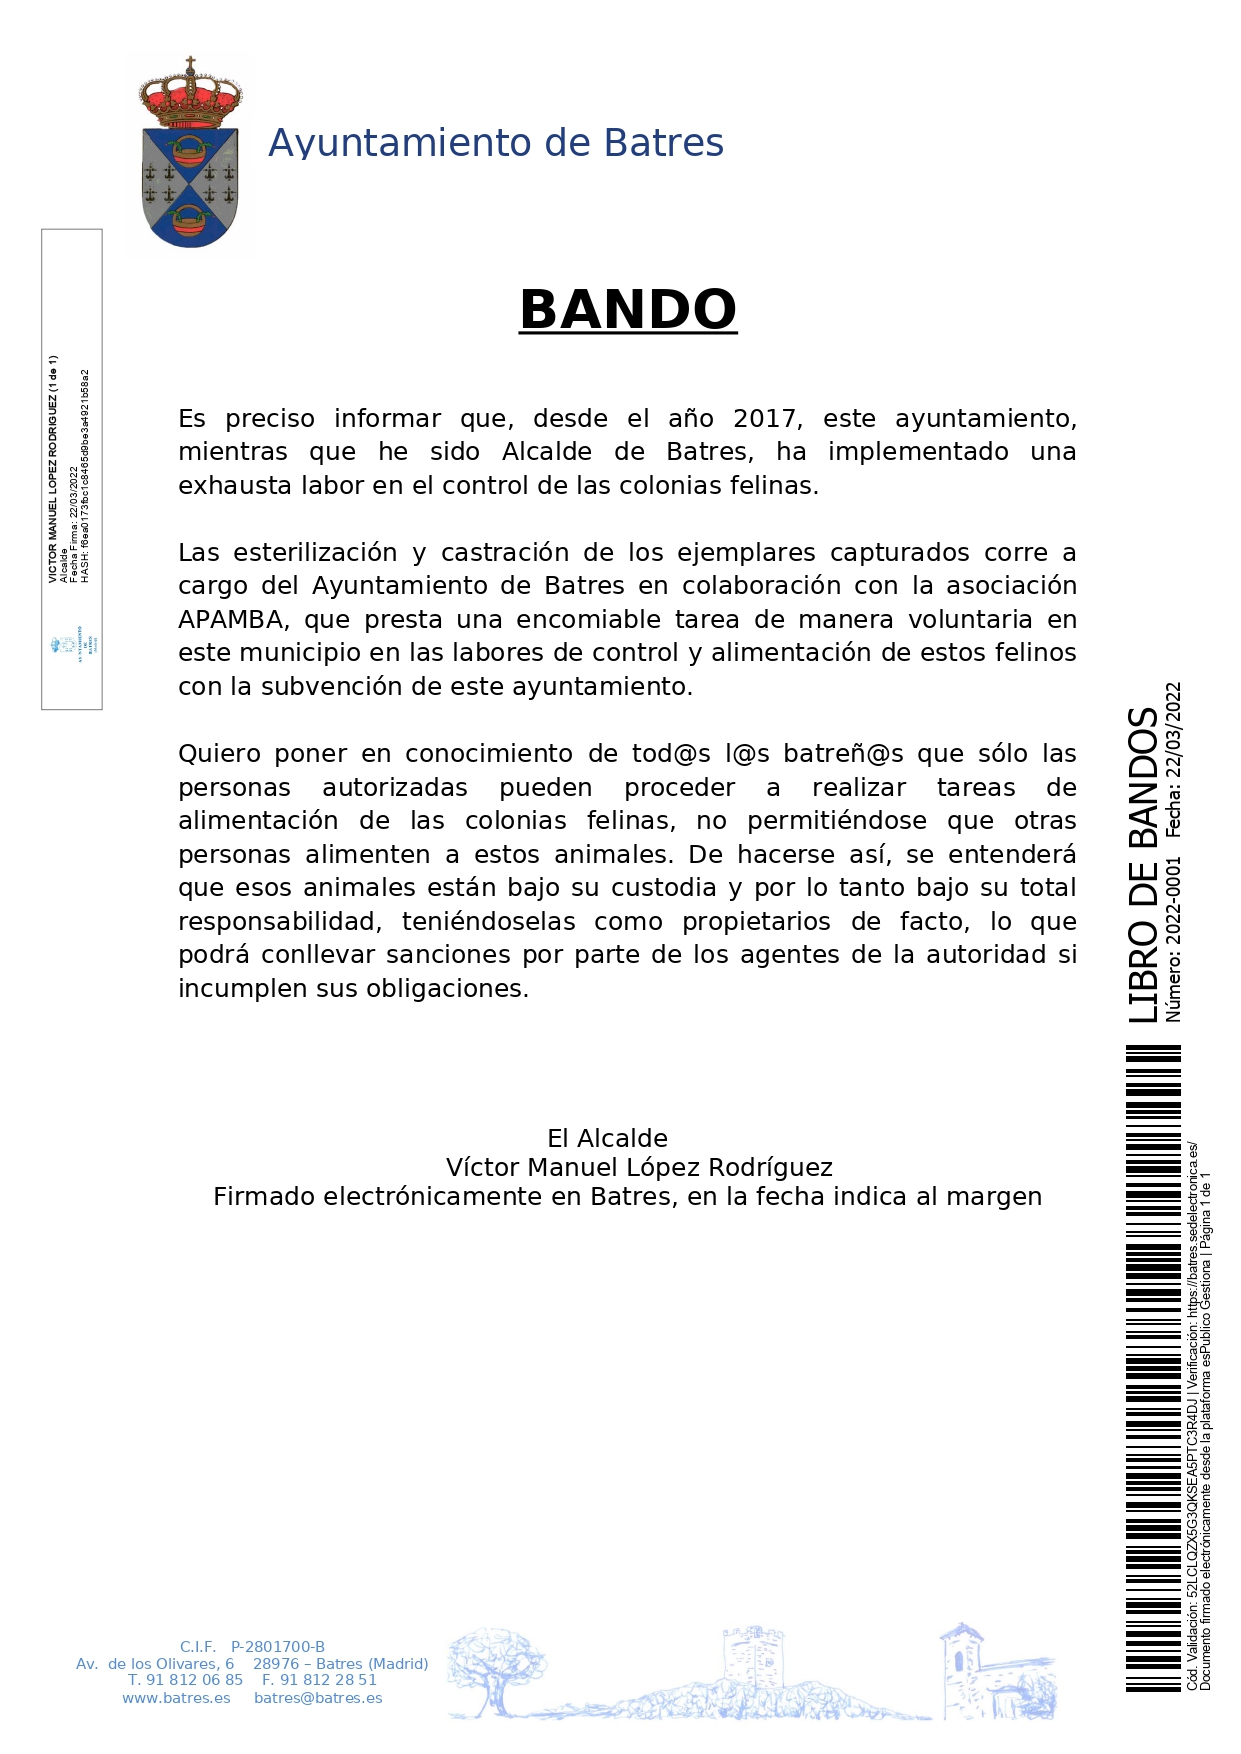 LIBRO DE BANDOS 2022 0001 ALIMENTACIN COLONIAS FELINAS page 0001 1